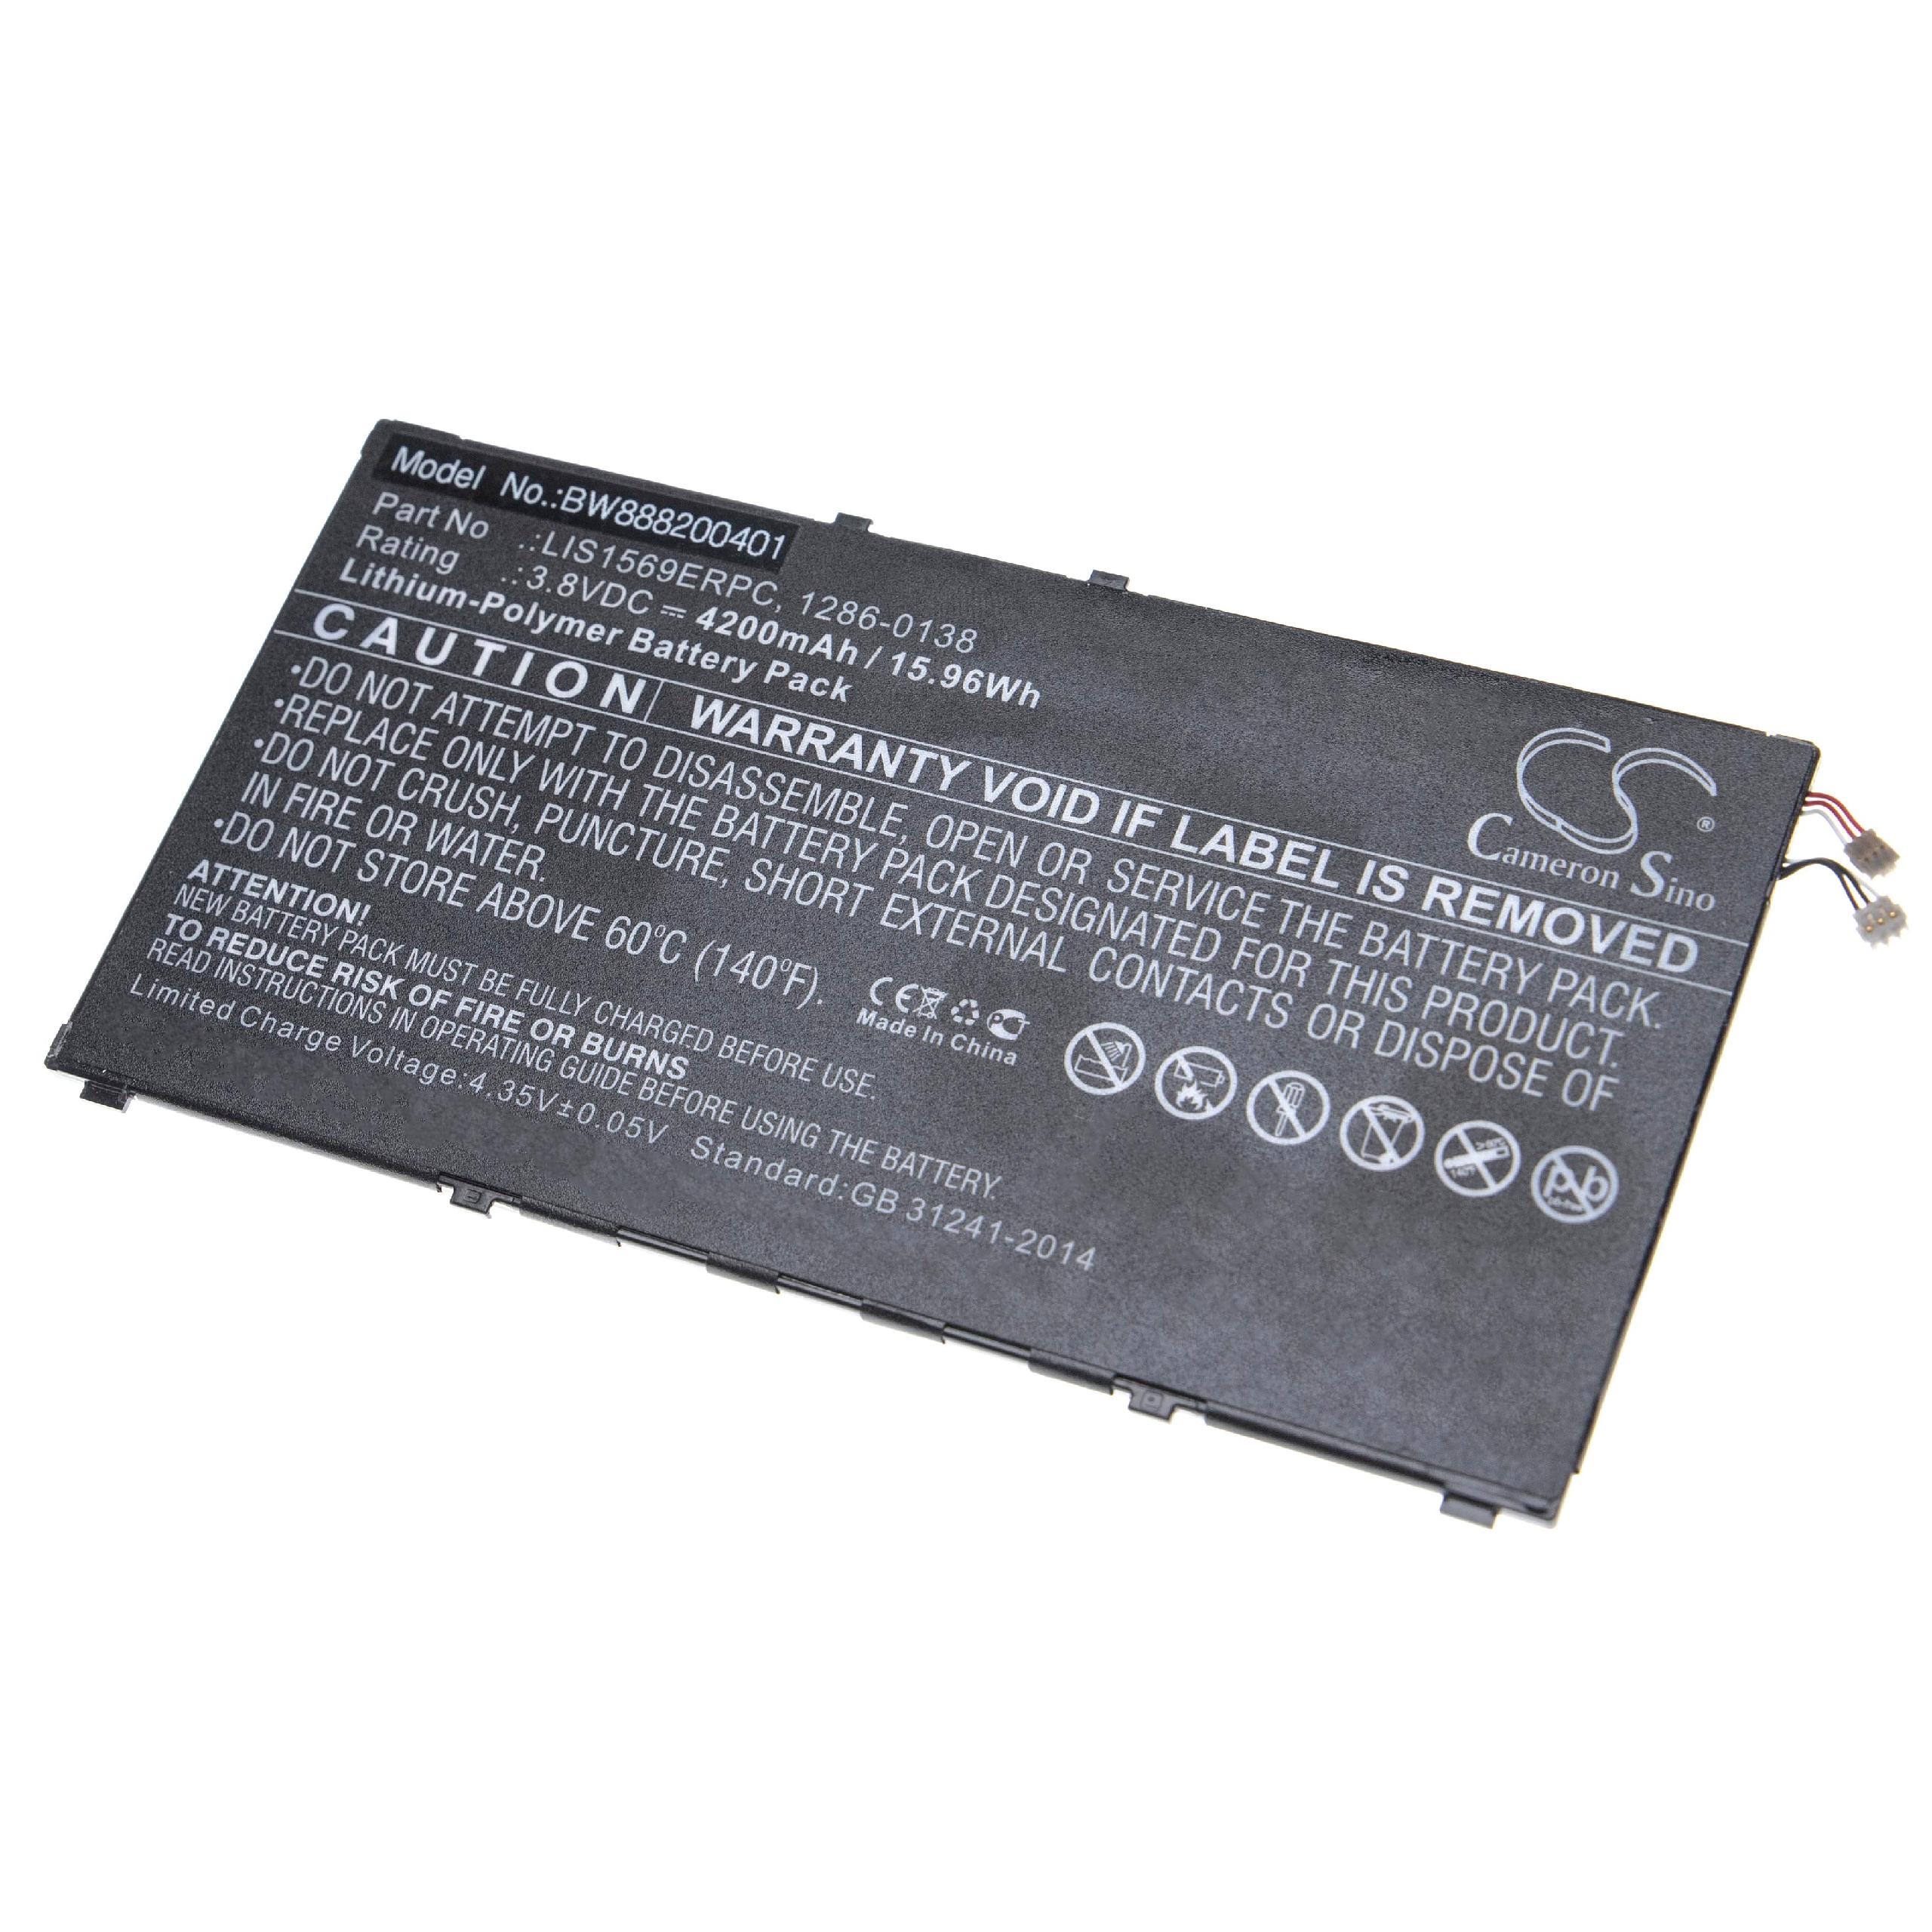 Batterie remplace Sony LIS1569ERPC, 1286-0138 pour téléphone portable - 4200mAh, 3,8V, Li-polymère